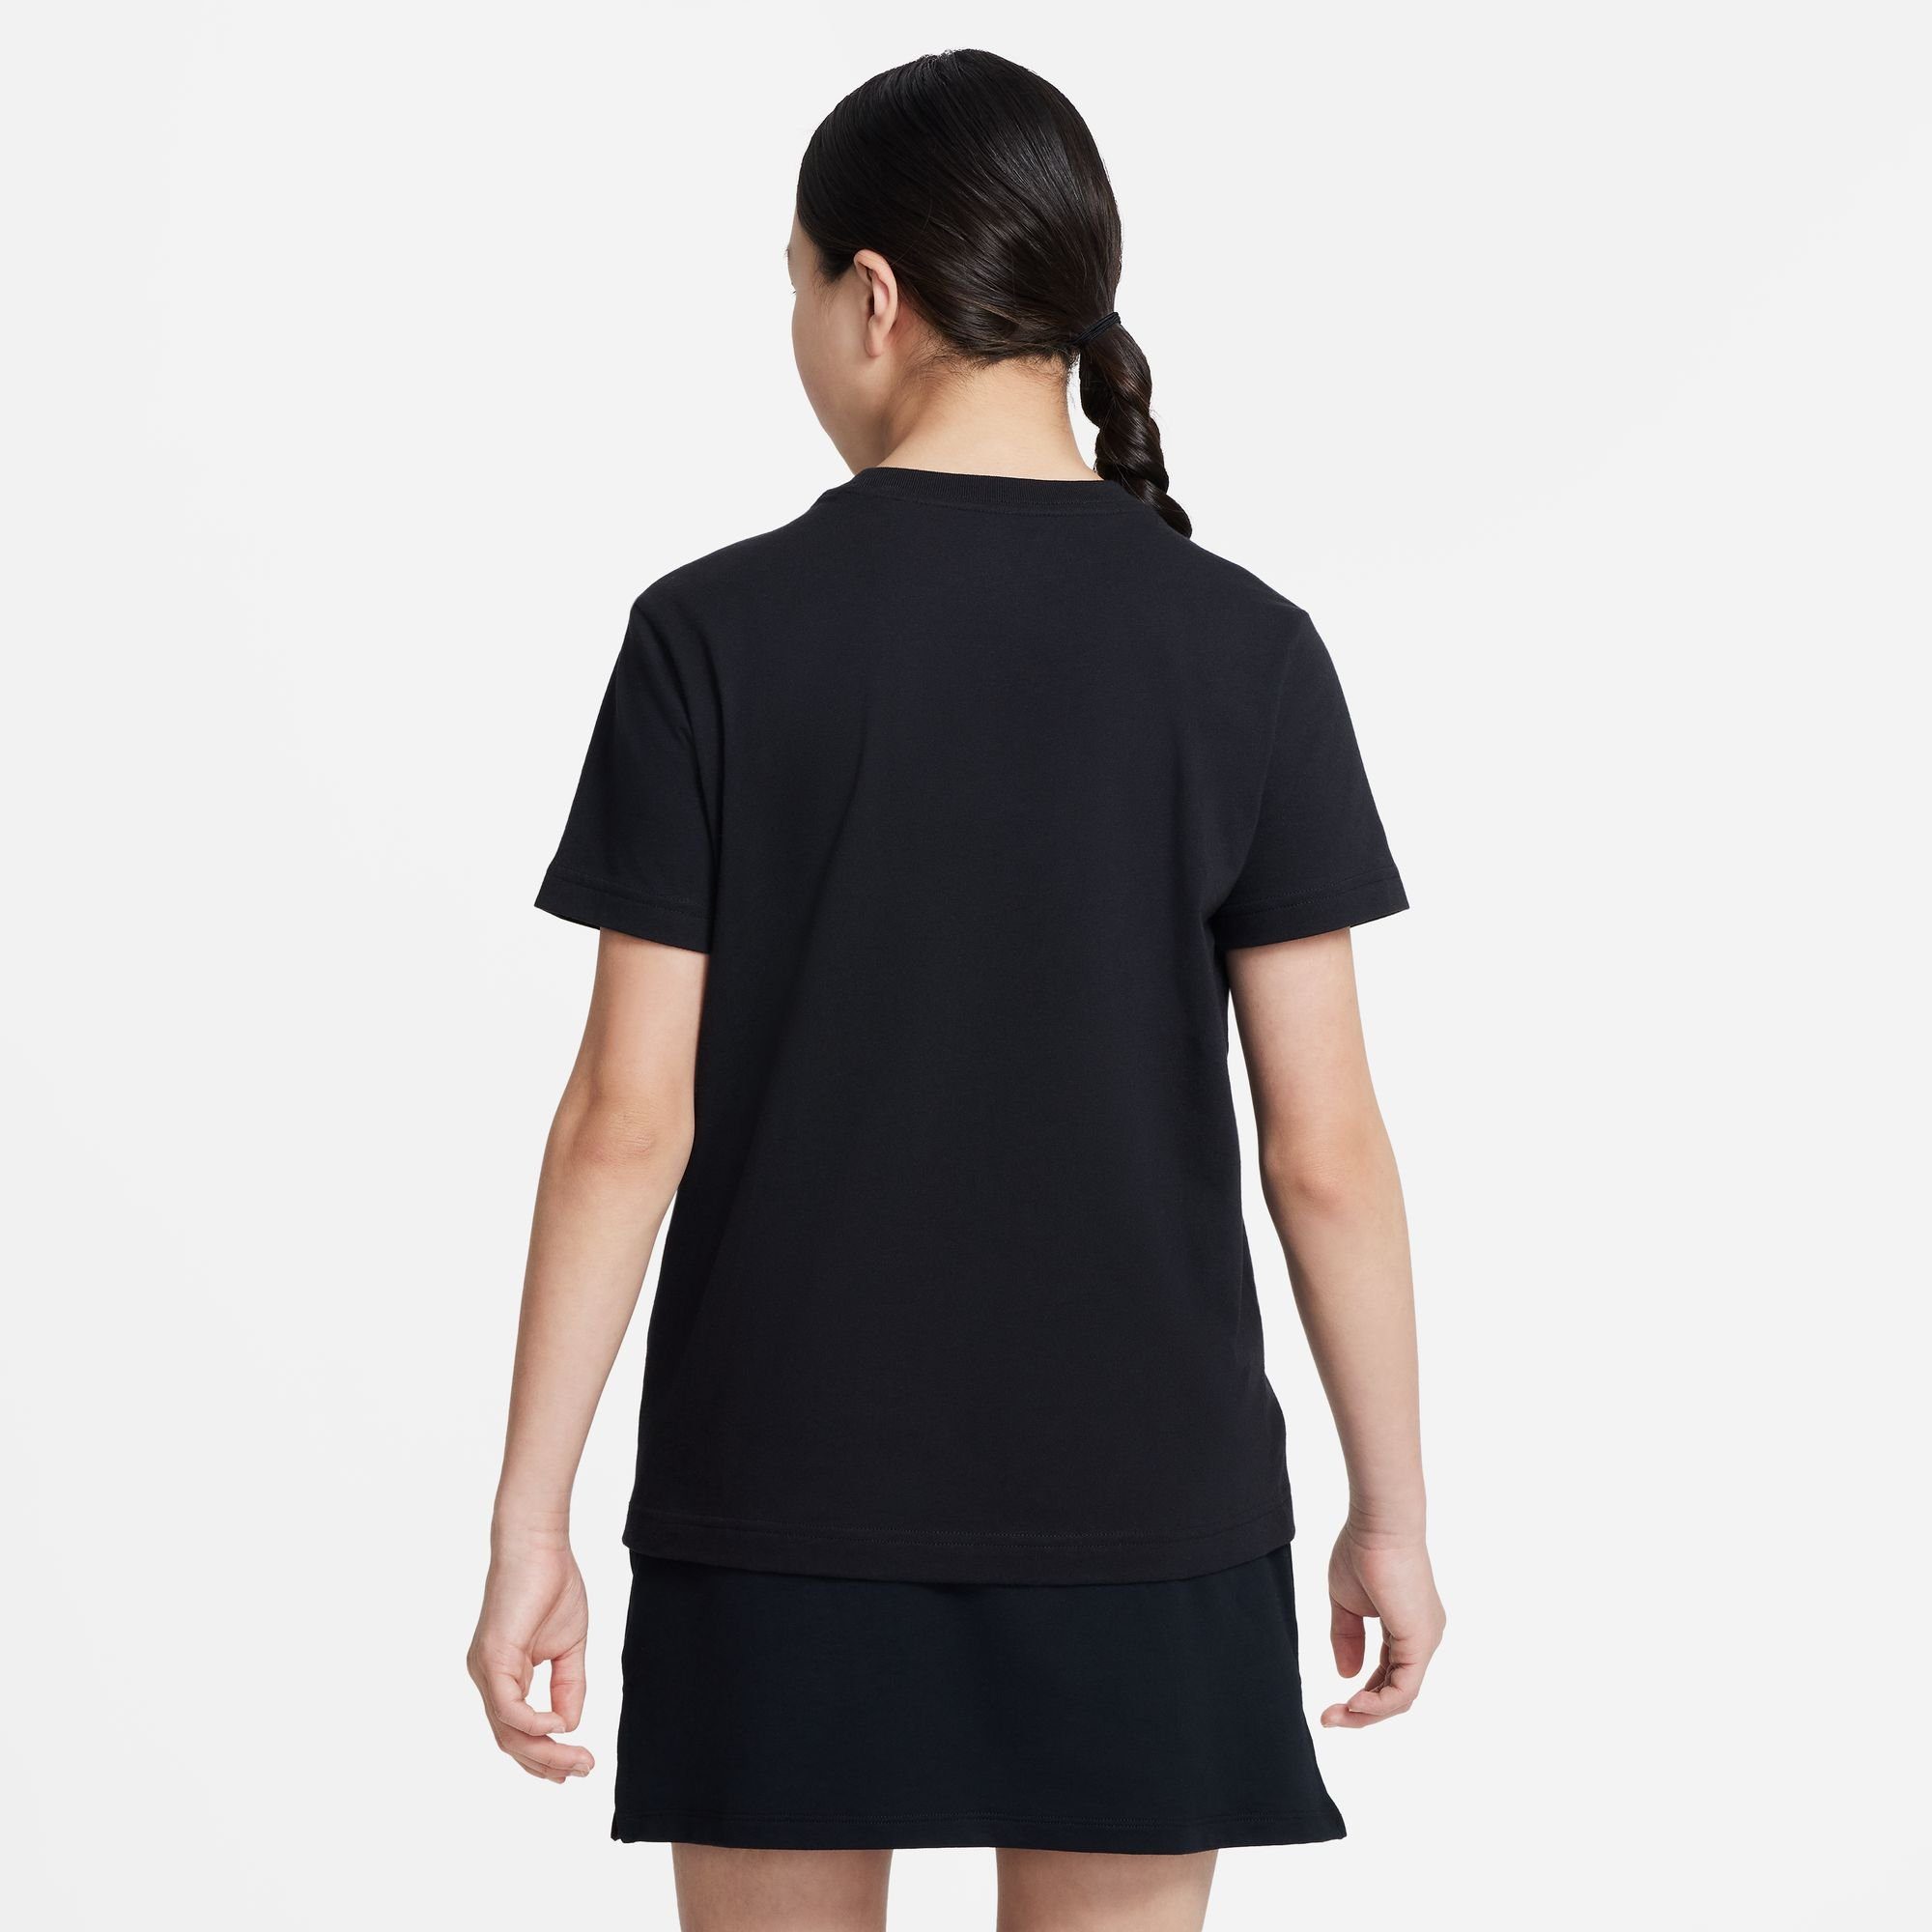 (GIRLS) Nike T-SHIRT Sportswear KIDS' T-Shirt schwarz BIG